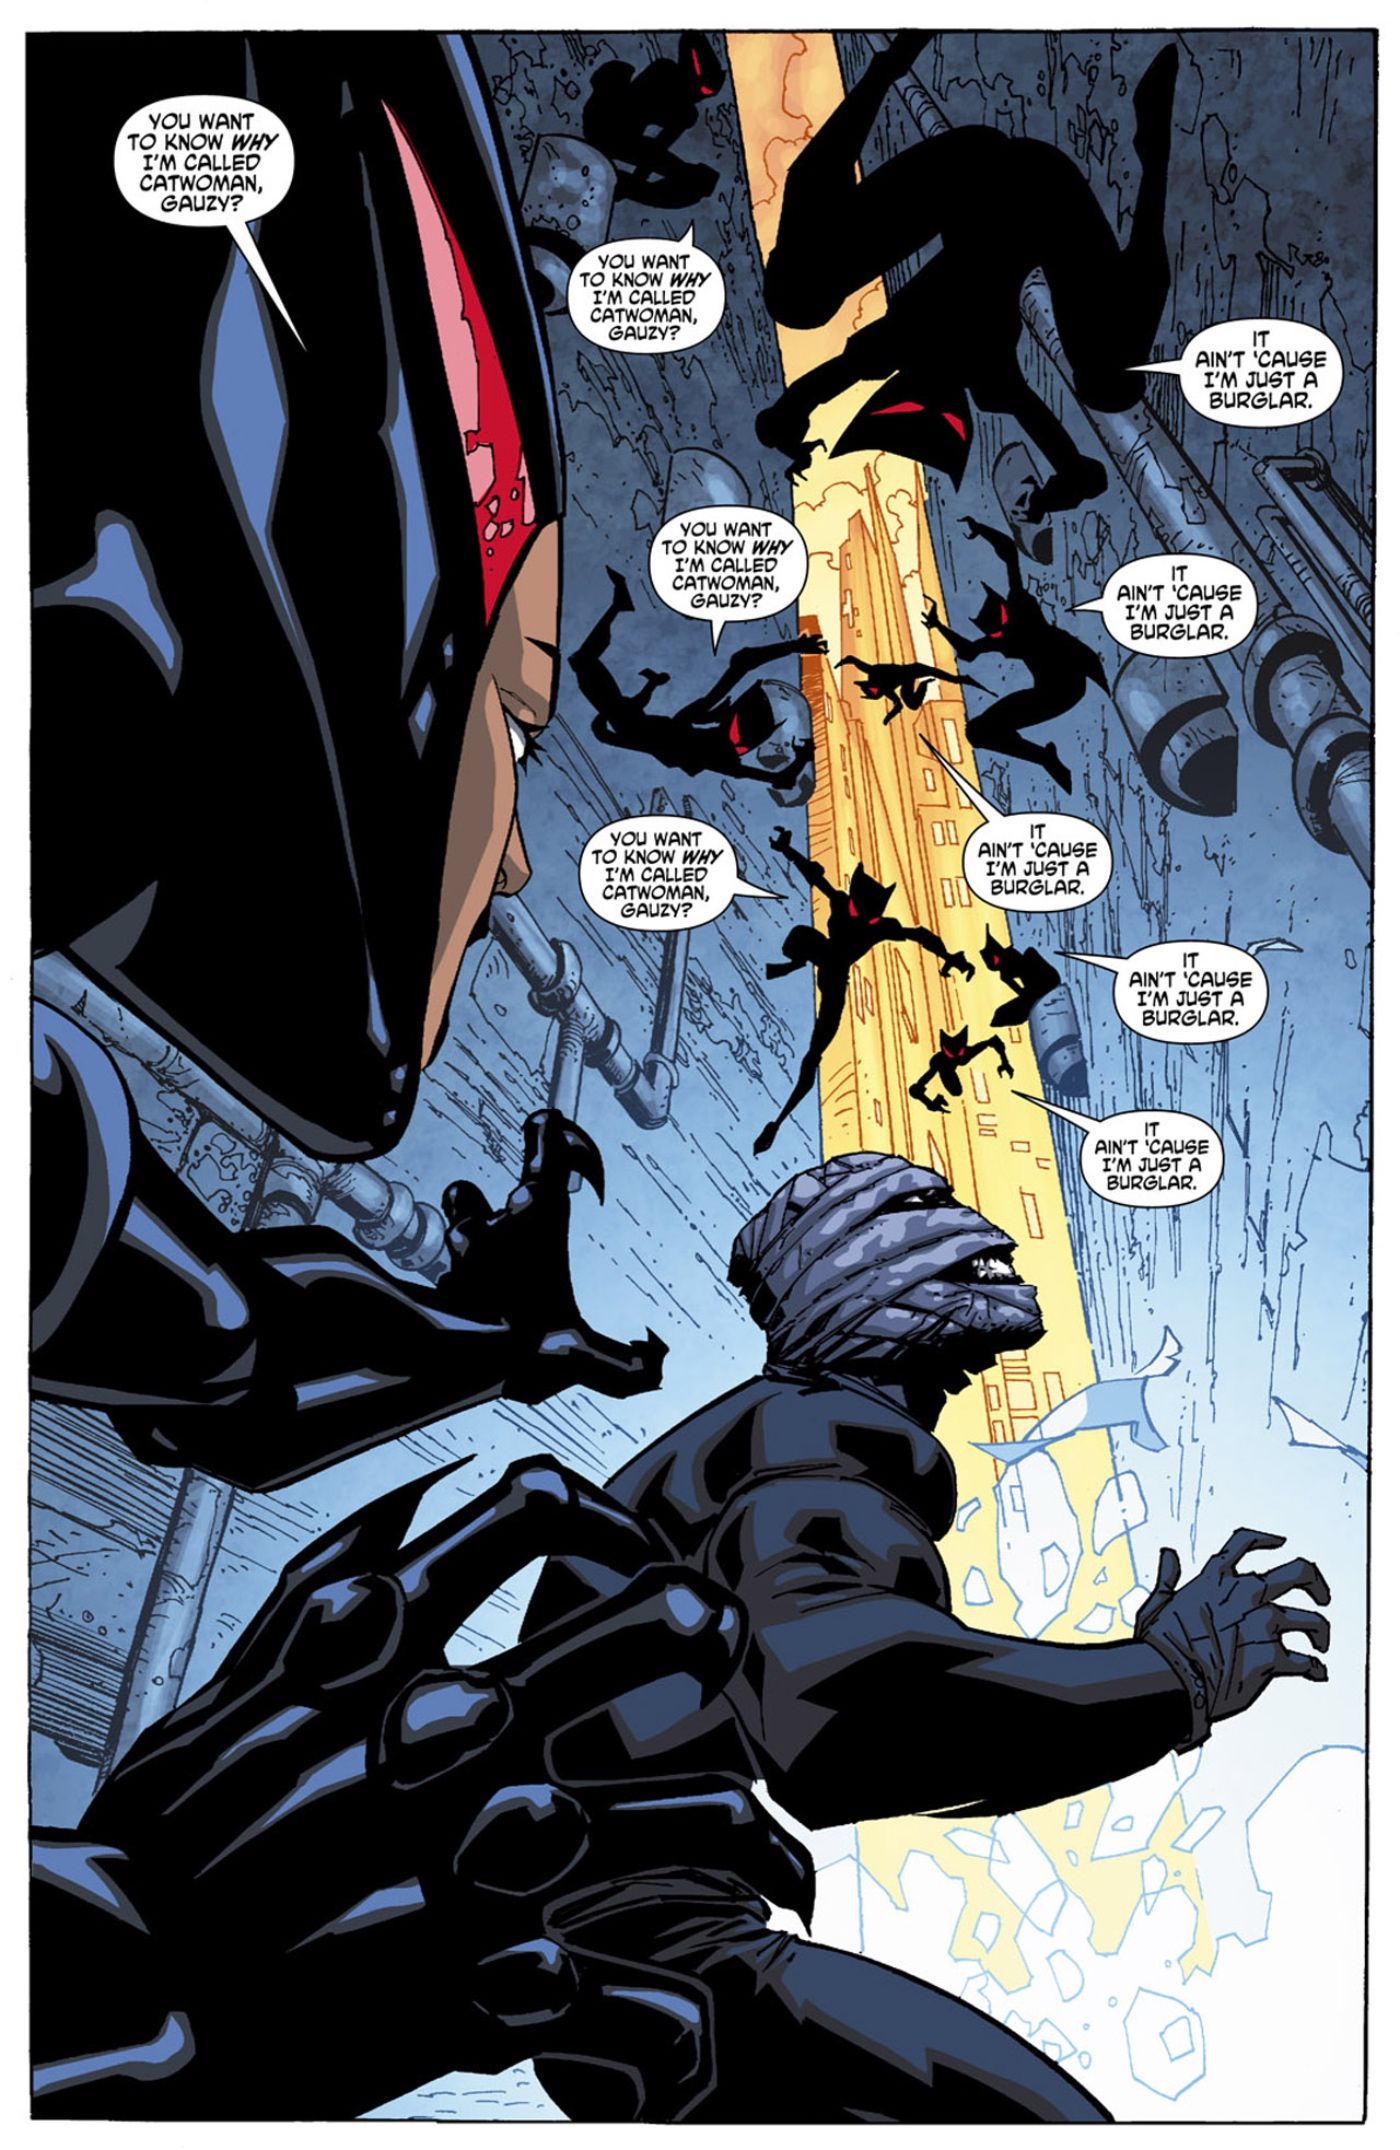 Catwoman 2 Batman Beyond Comic